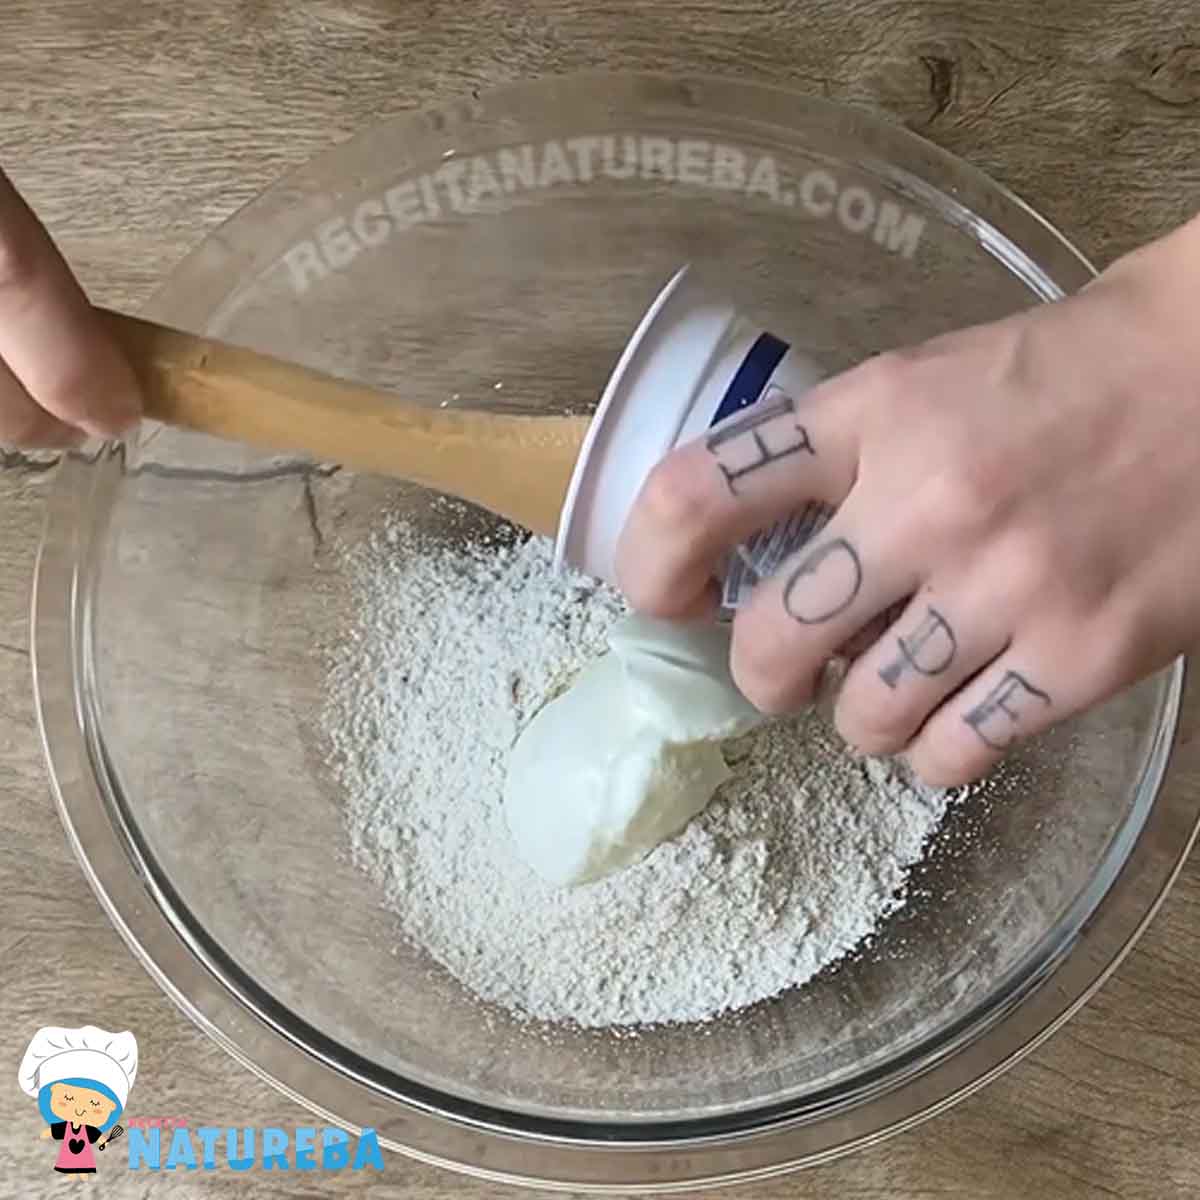 misturando a farinha com o iogurte para pizza de aveia